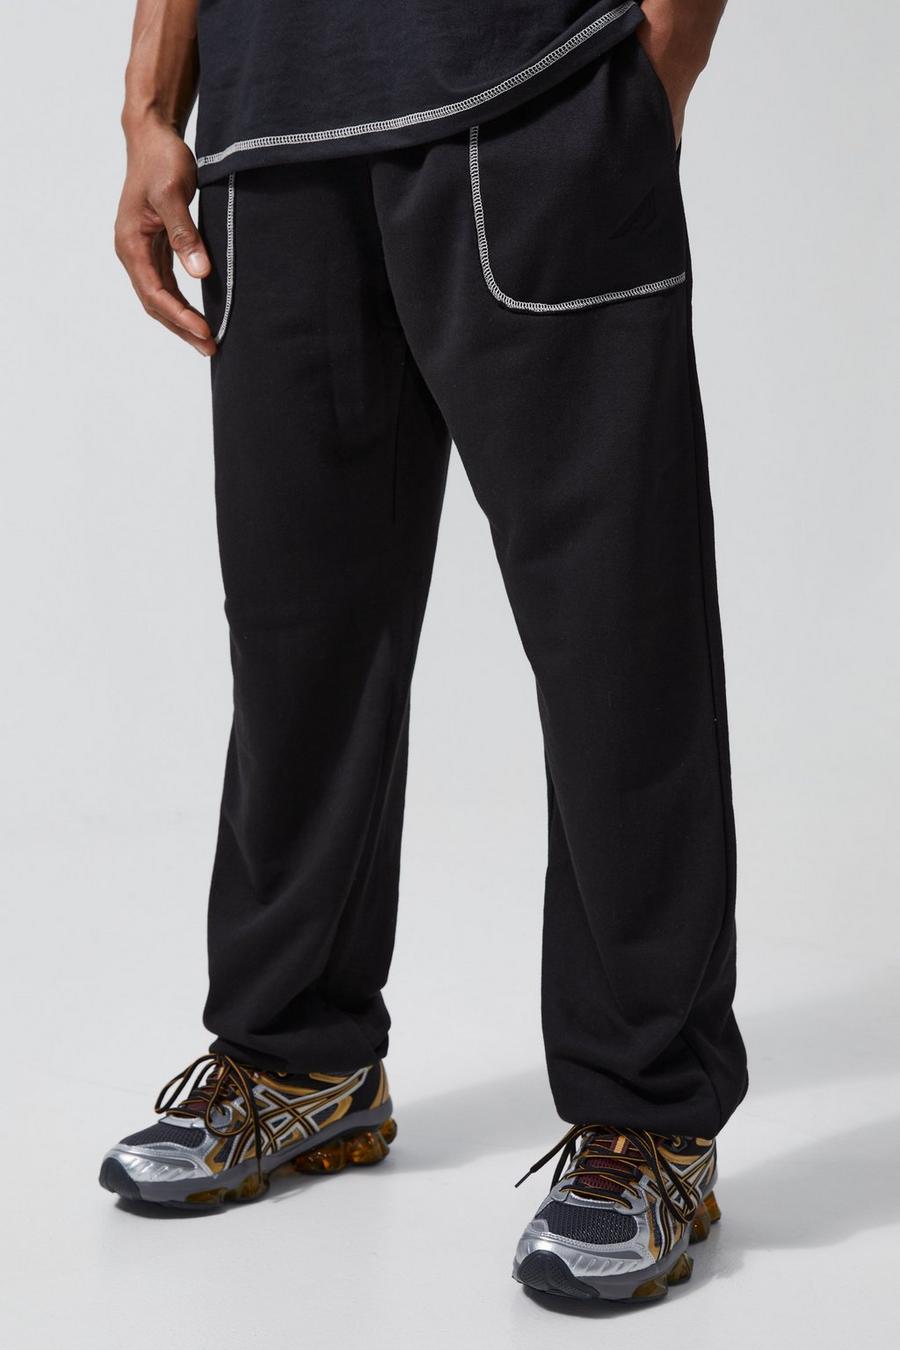 Pantalón deportivo oversize Active de tela rizo gruesa con flecos, Black